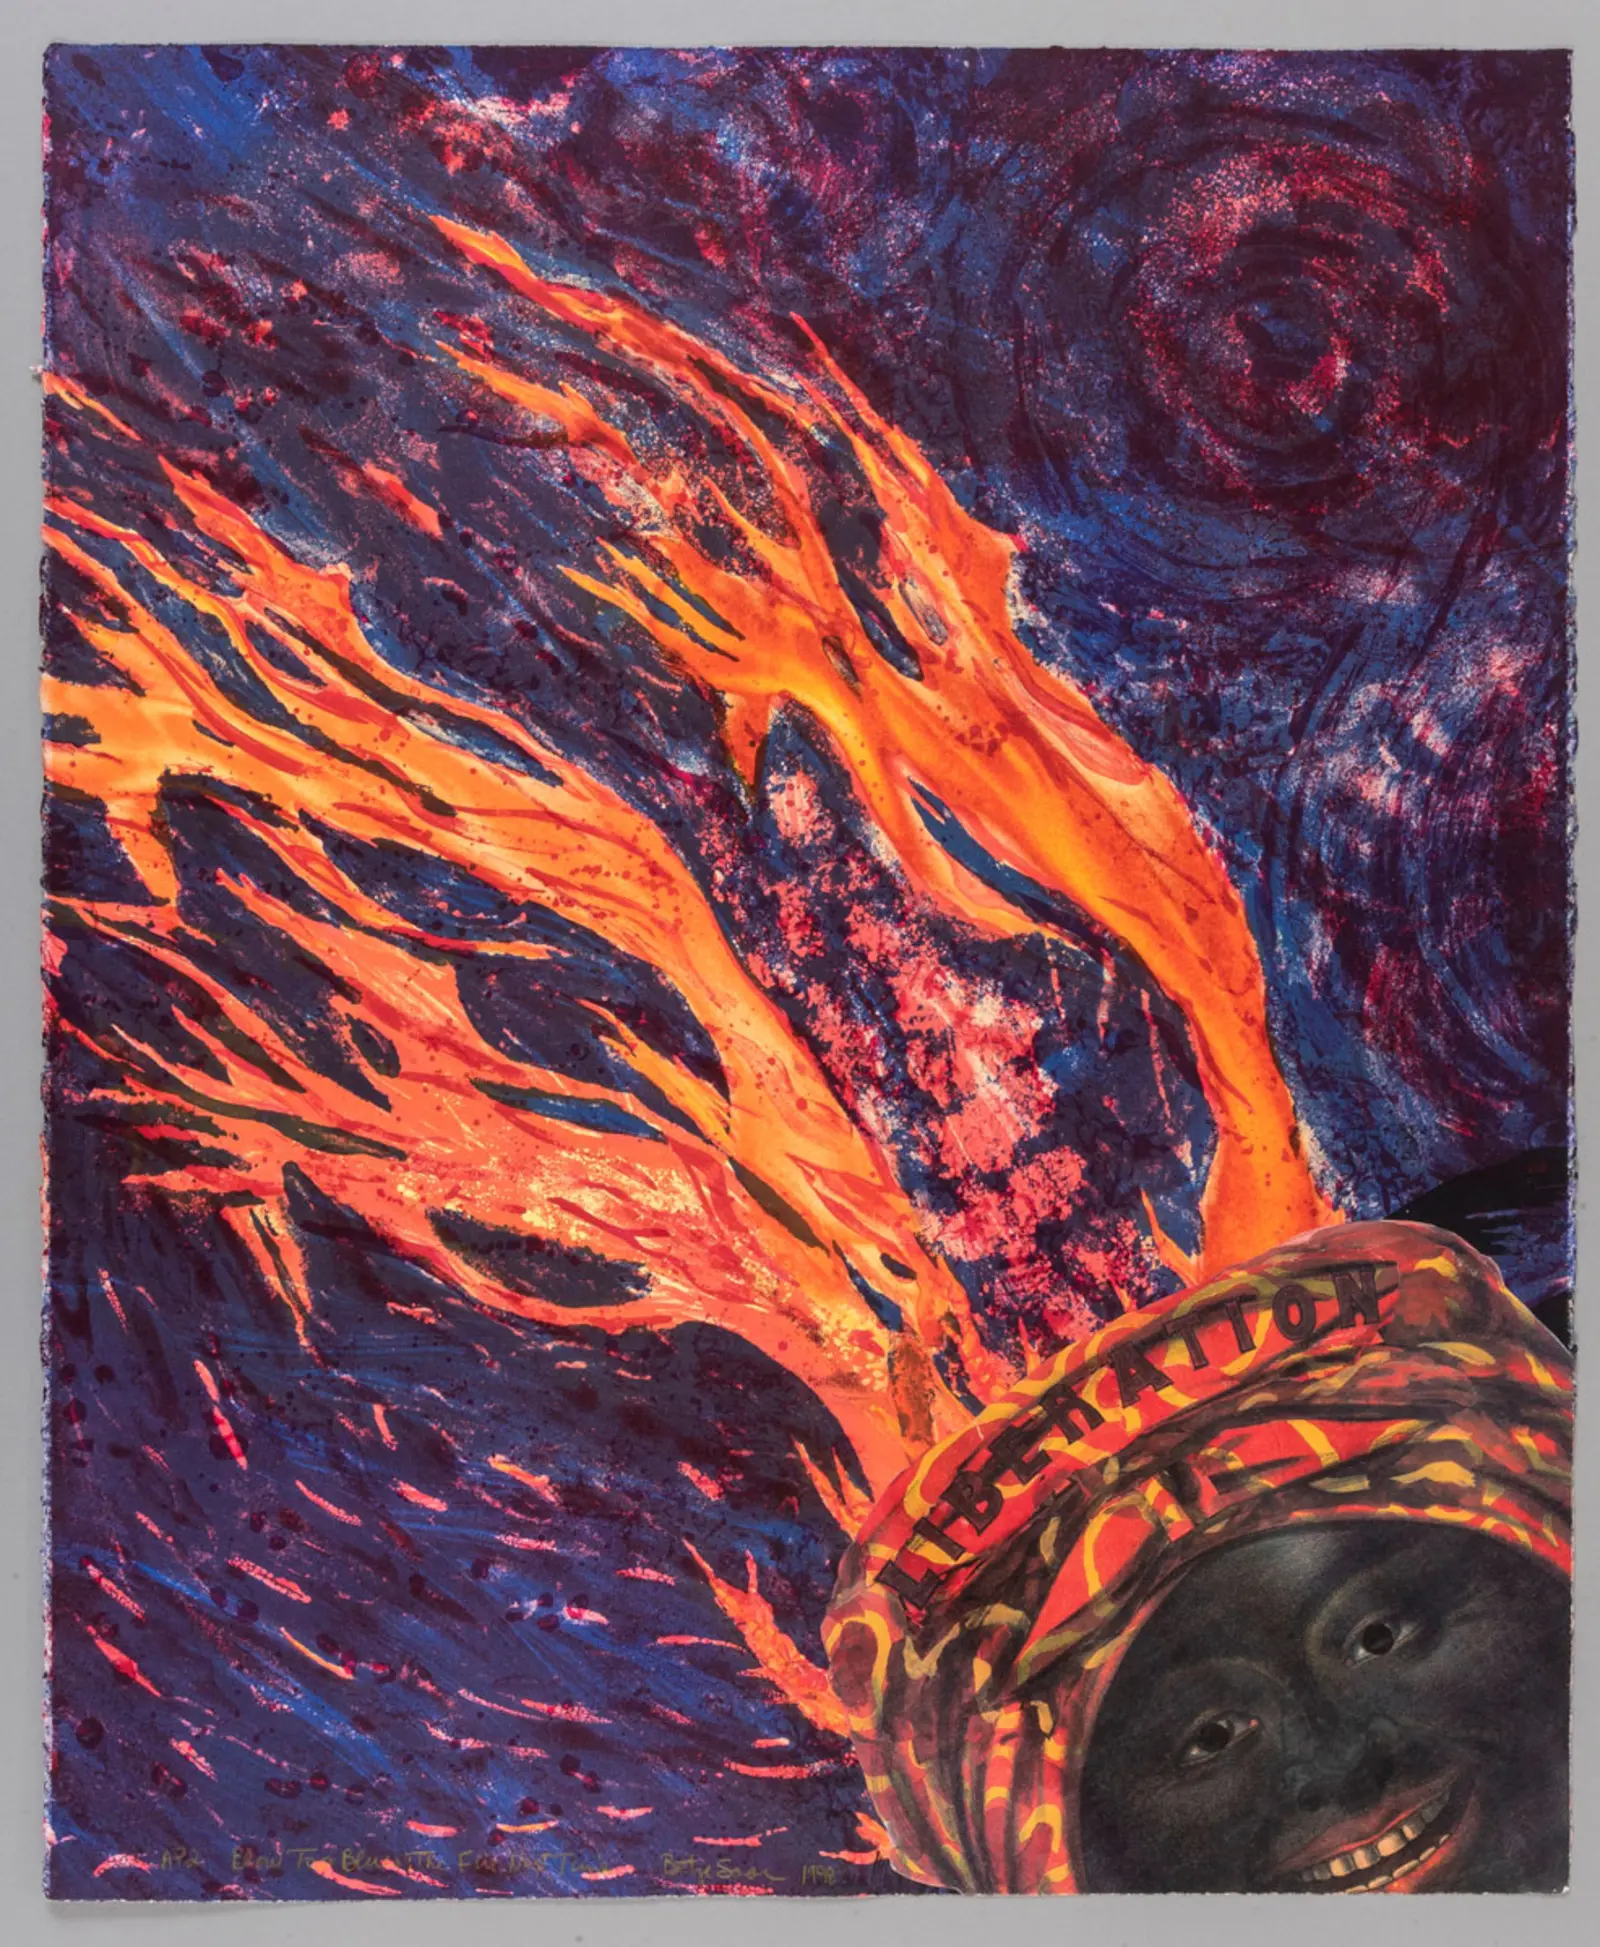 Litografía de una mujer negra que lleva un pañuelo con la palabra LIBERACIÓN mientras llamas brillantes salen disparadas de él sobre un fondo azul oscuro y morado.